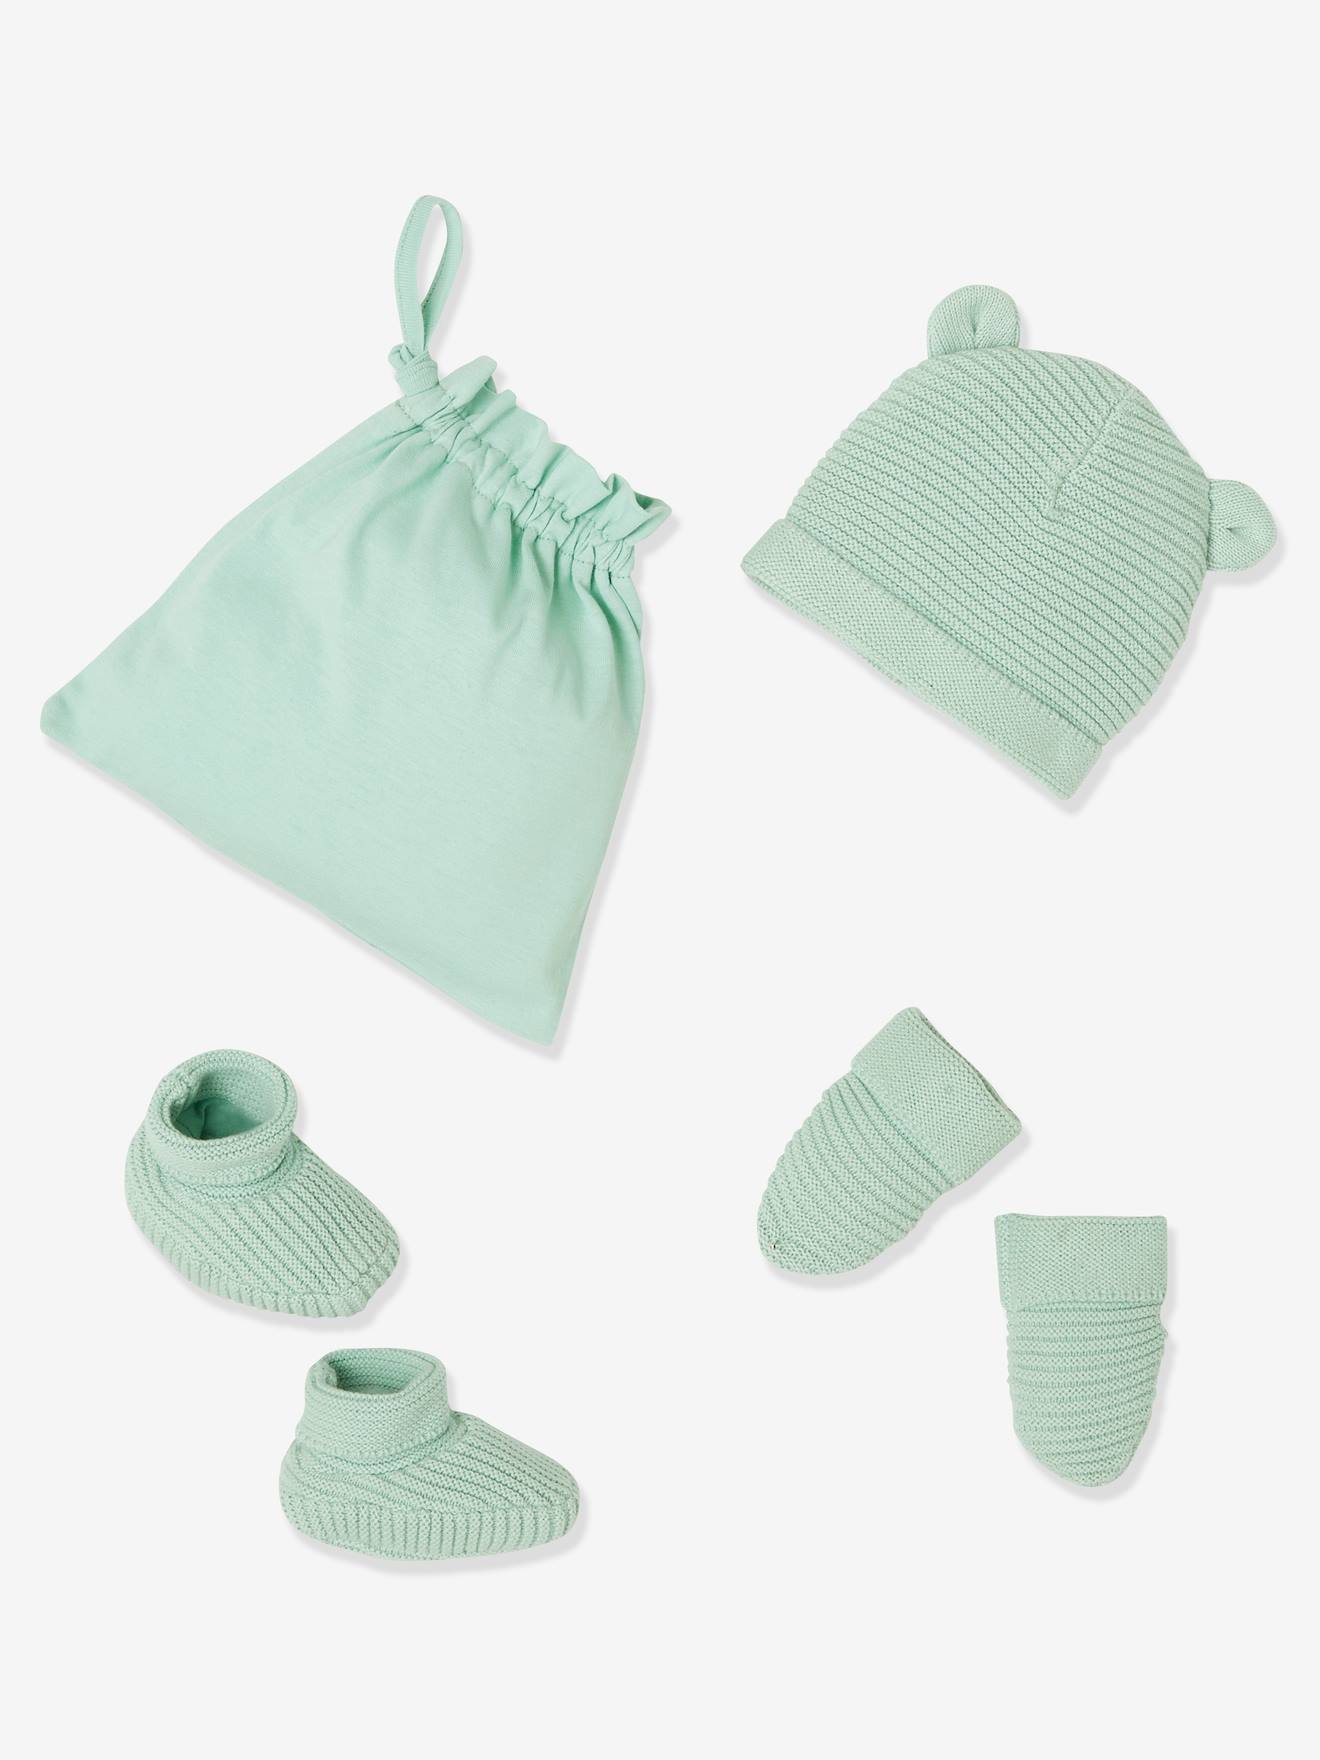 Conjunto gorro, luvas e sapatinhos, bolsa a condizer, Oeko-Tex®, para recém-nascido verde claro liso